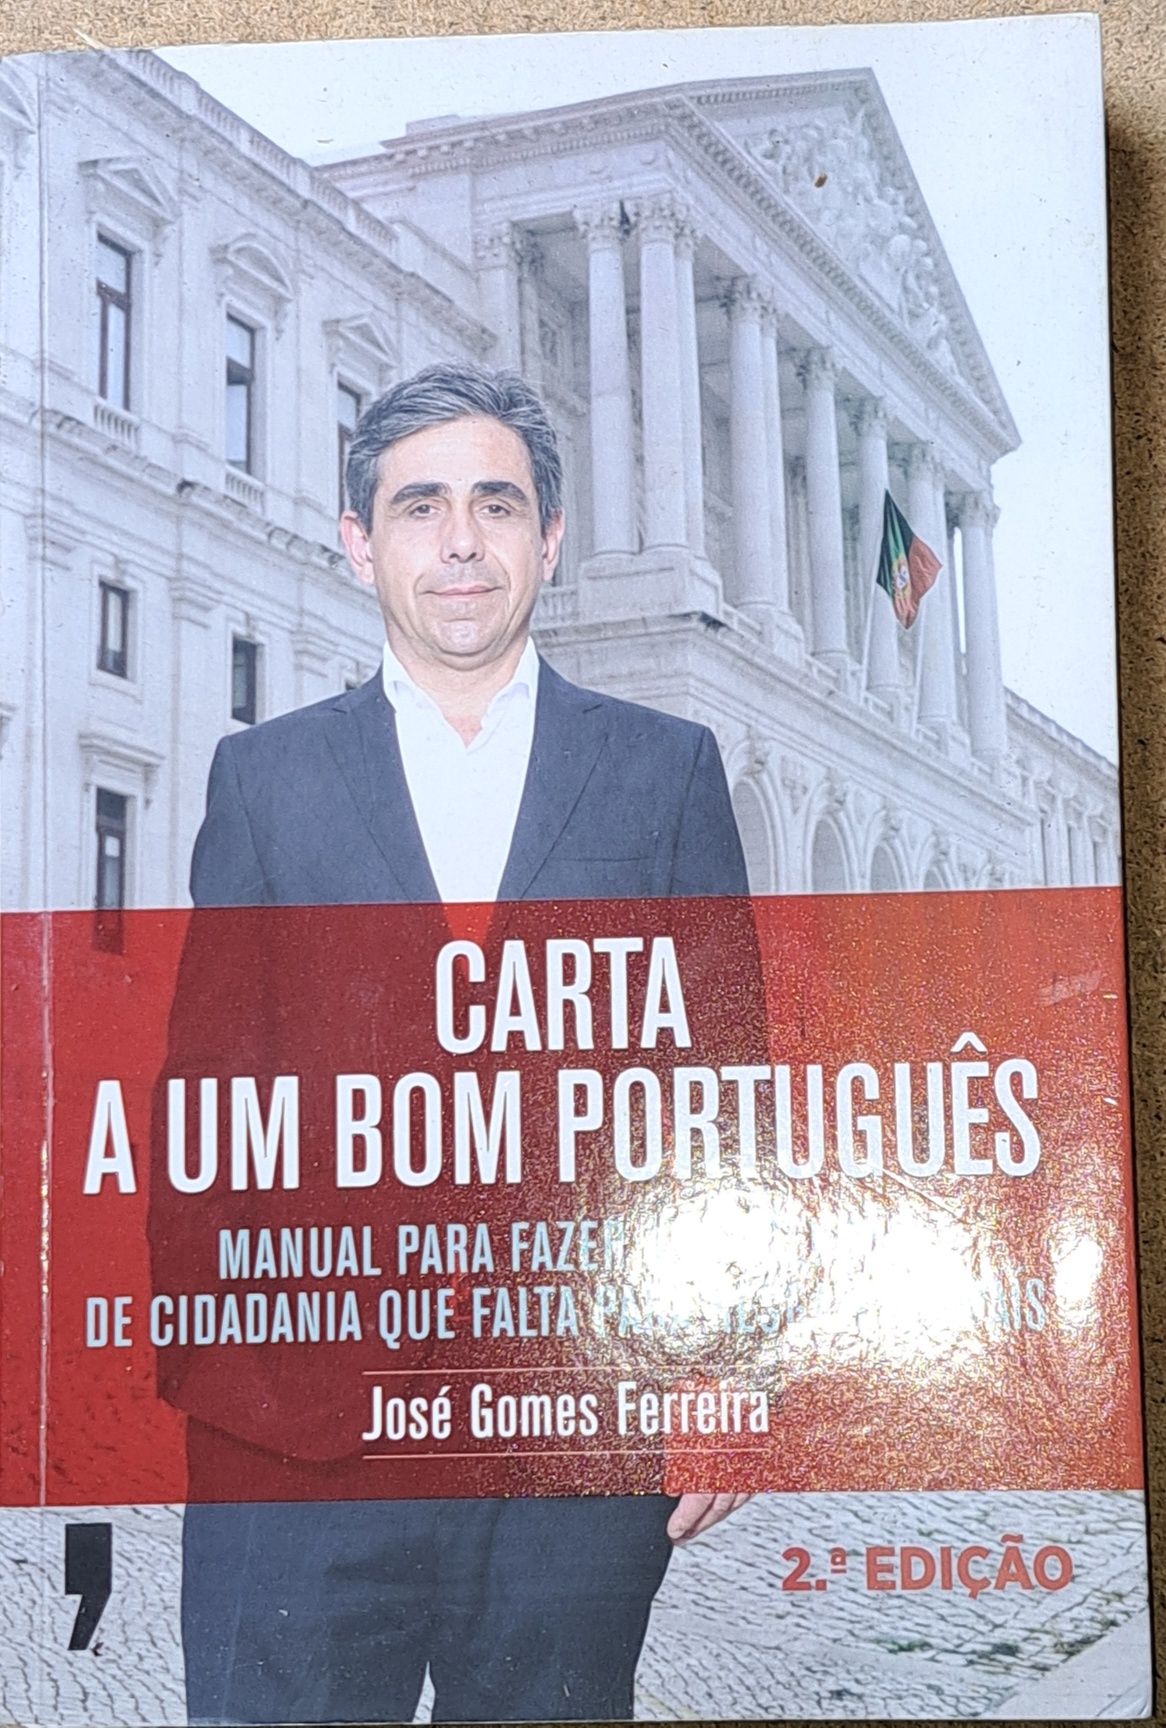 Livro "Carta a um Bom Português "